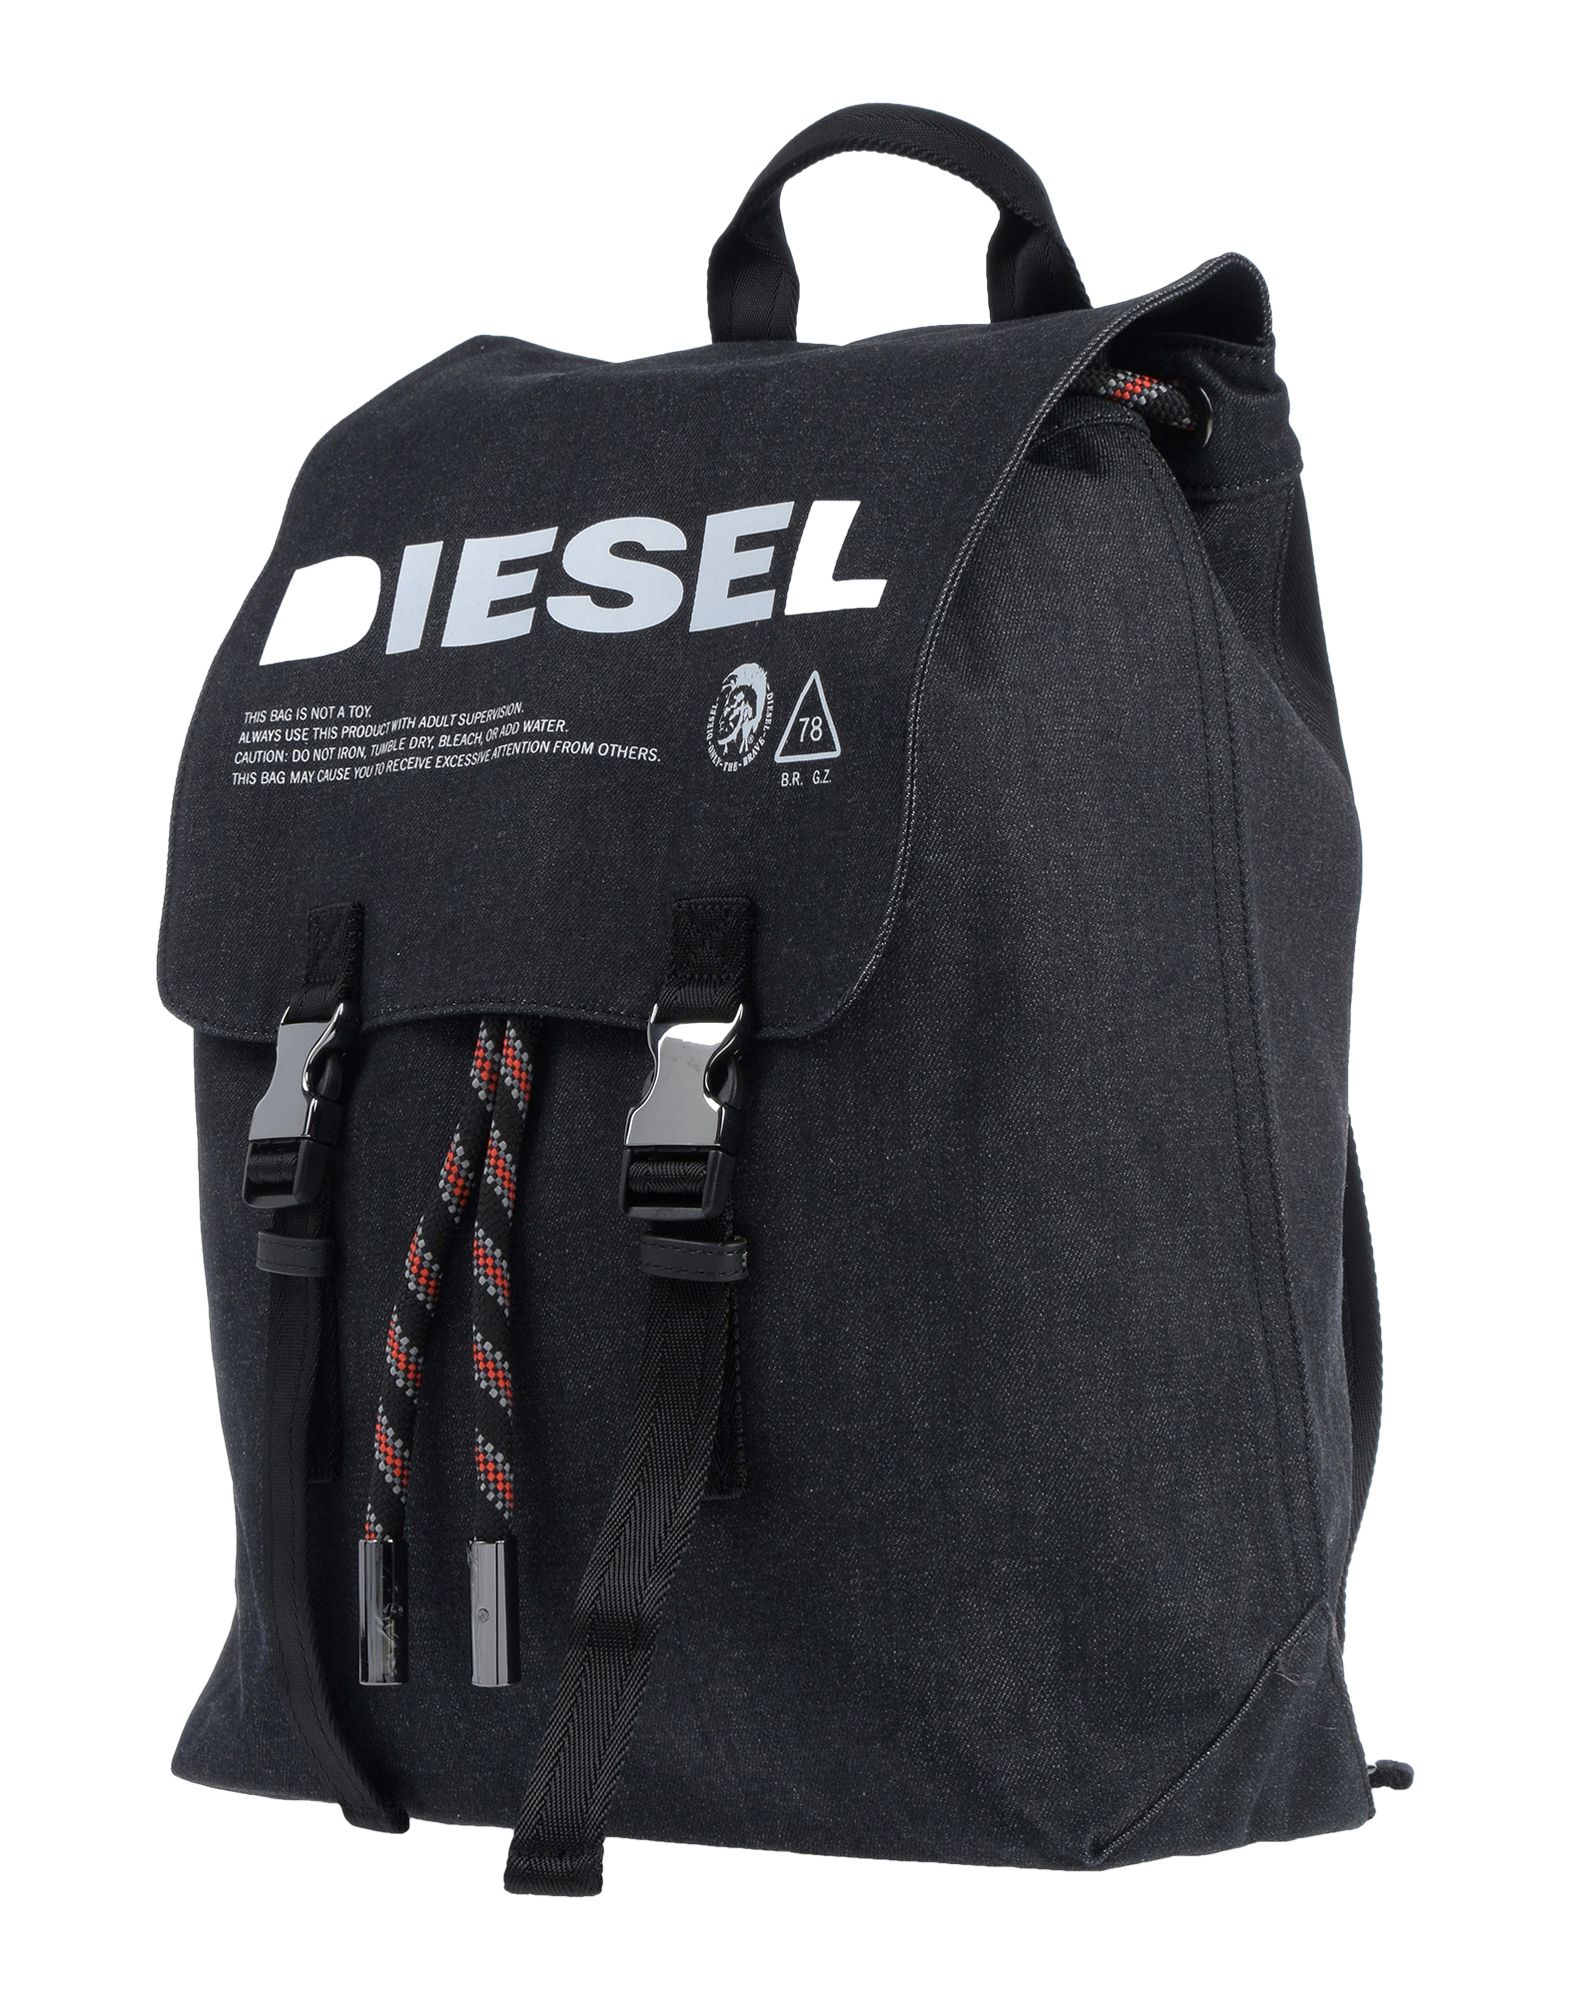 ディーゼル Diesel デイパック リュック 通販 人気ランキング